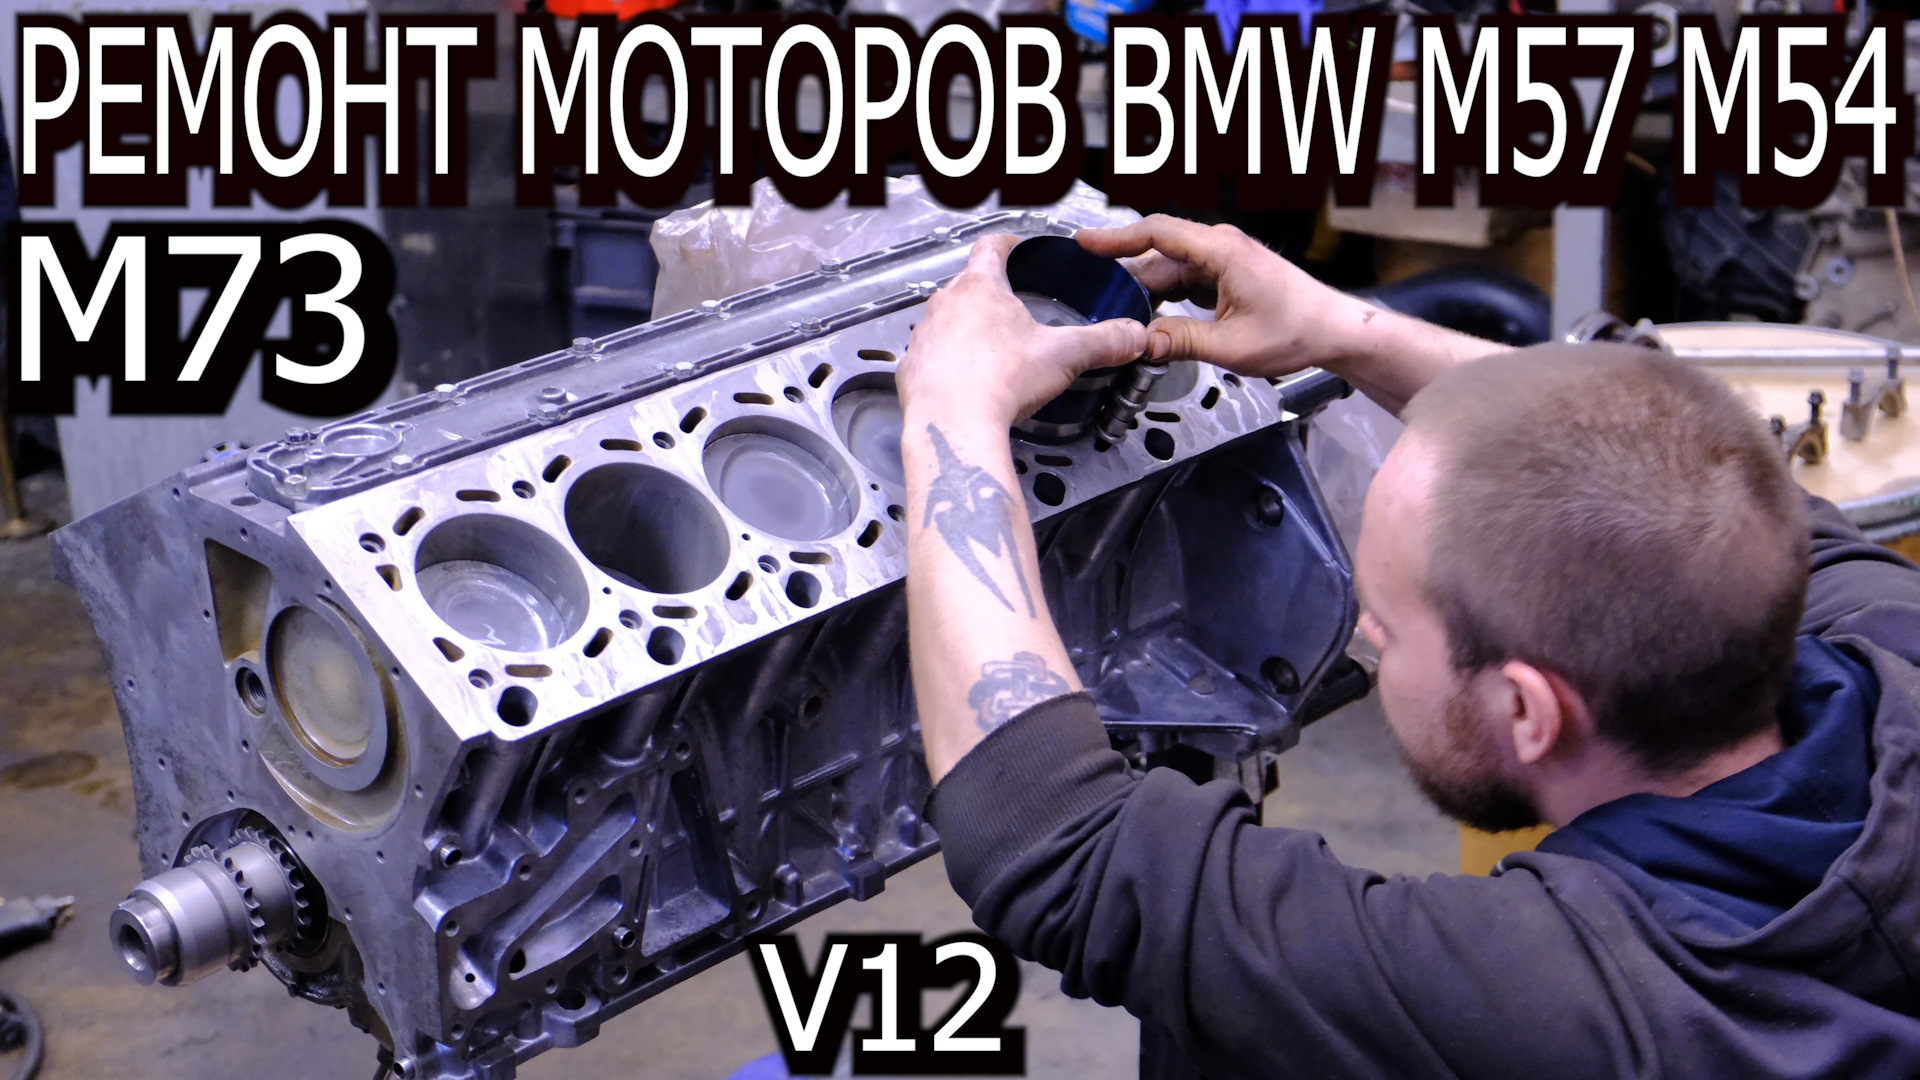 Ремонт двигателя. М73 БМВ двигатель. Ремонт двигателя BMW. BMW m52 ремонт мотора.